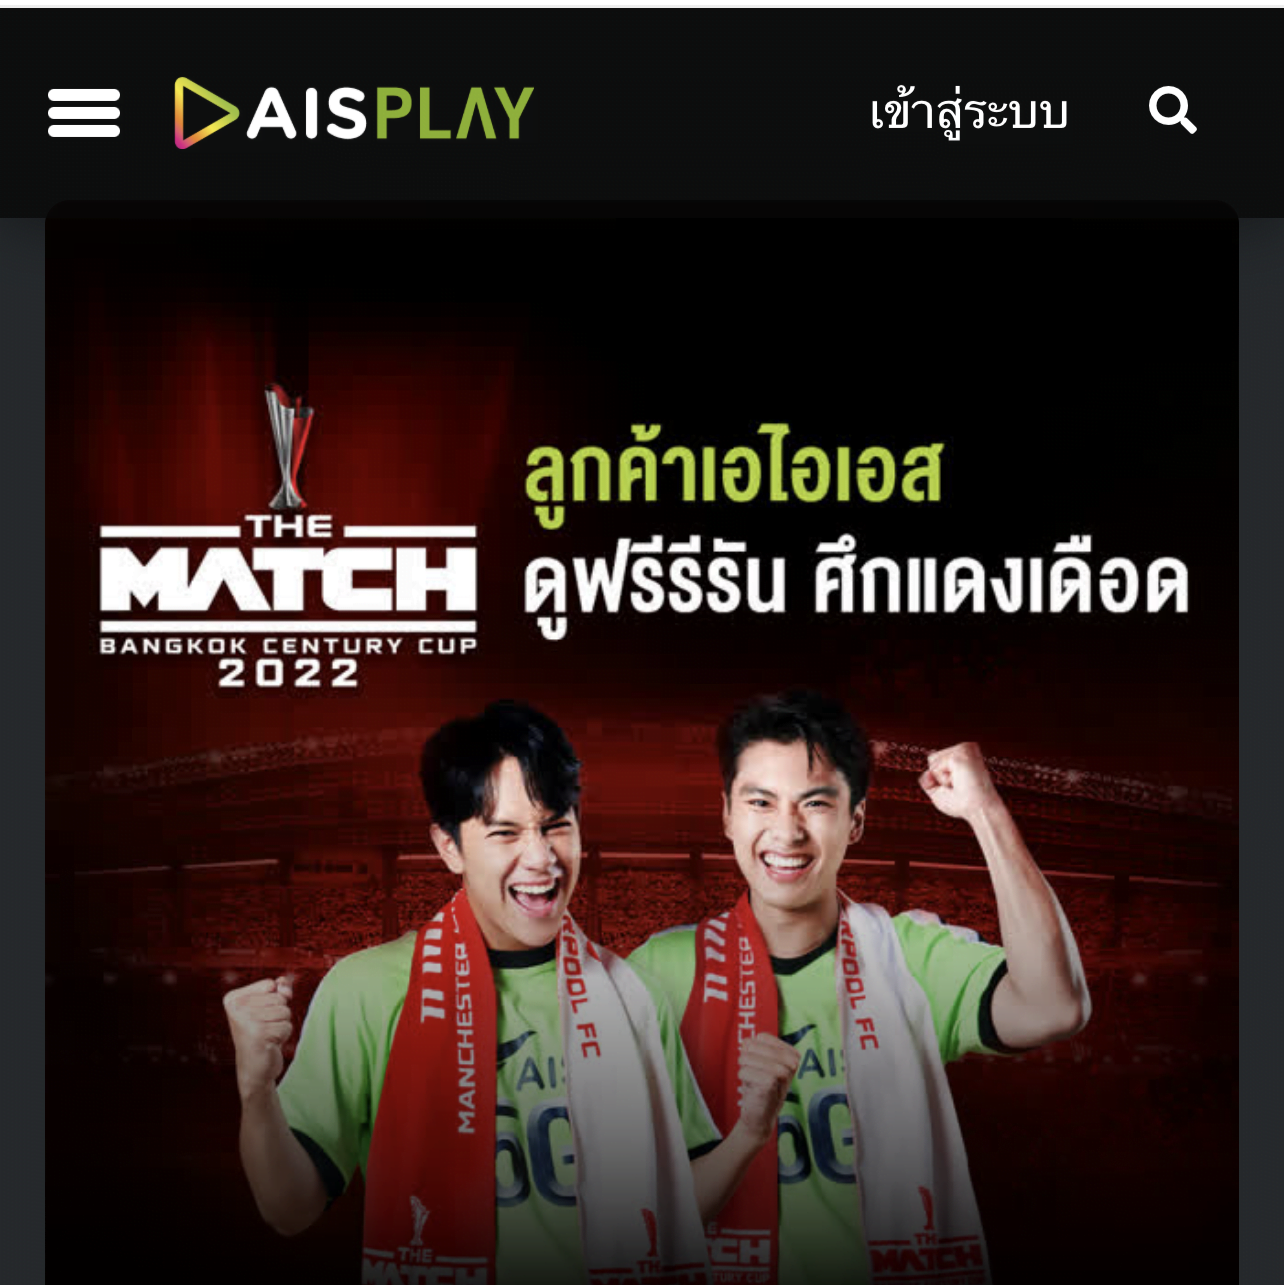 [ช่องทางดูศึกแดงเดือดสด] the match bangkok century cup 2022 ถ่ายทอดสด 2 ทุ่ม